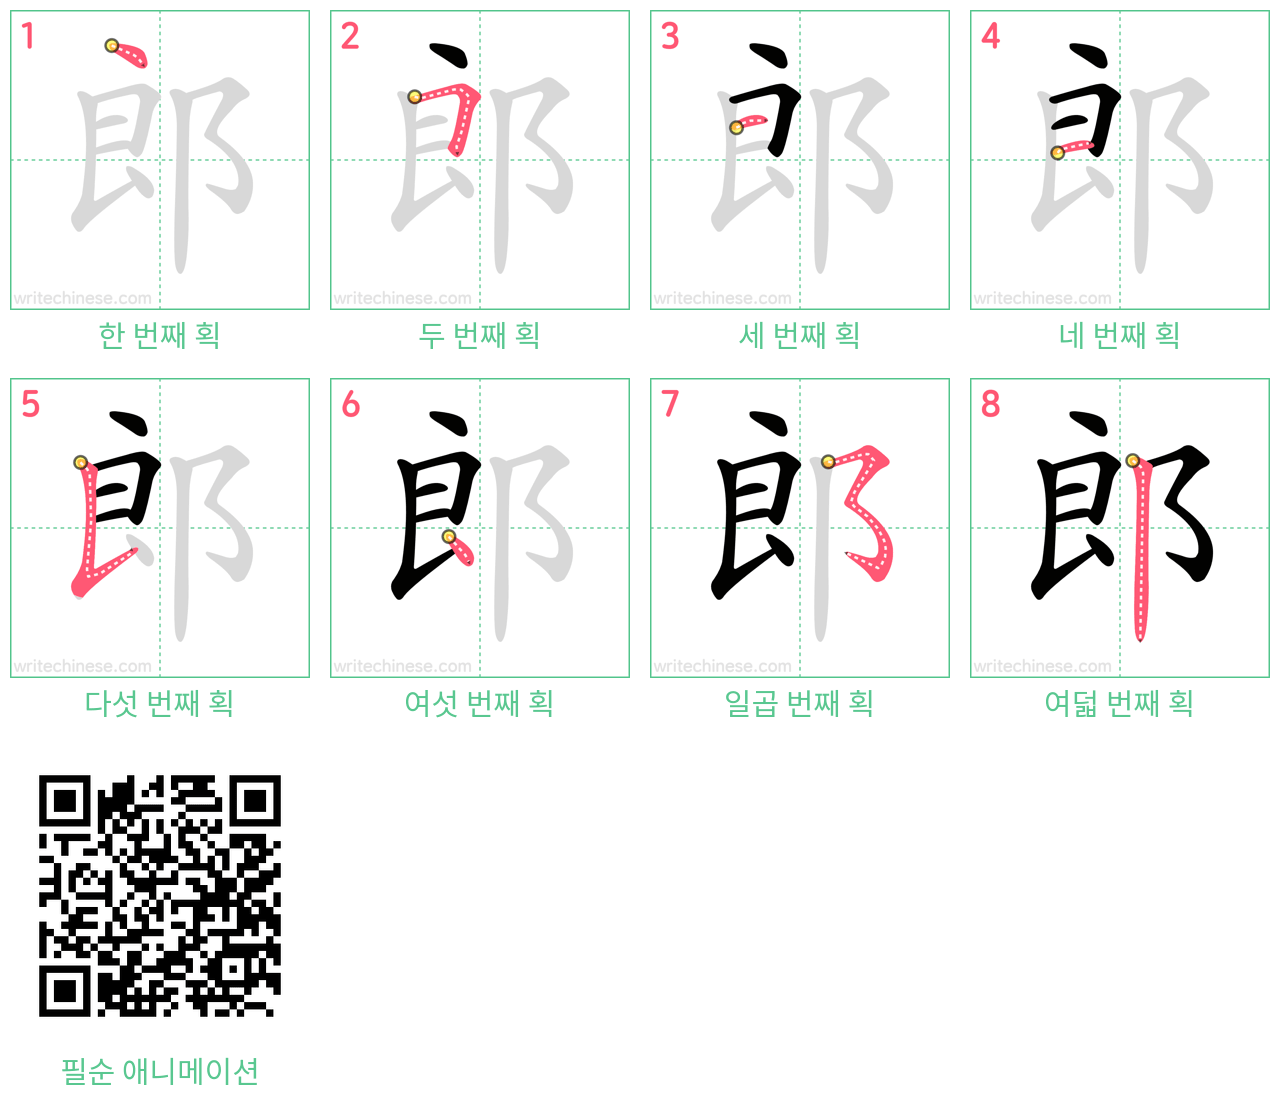 郎 step-by-step stroke order diagrams